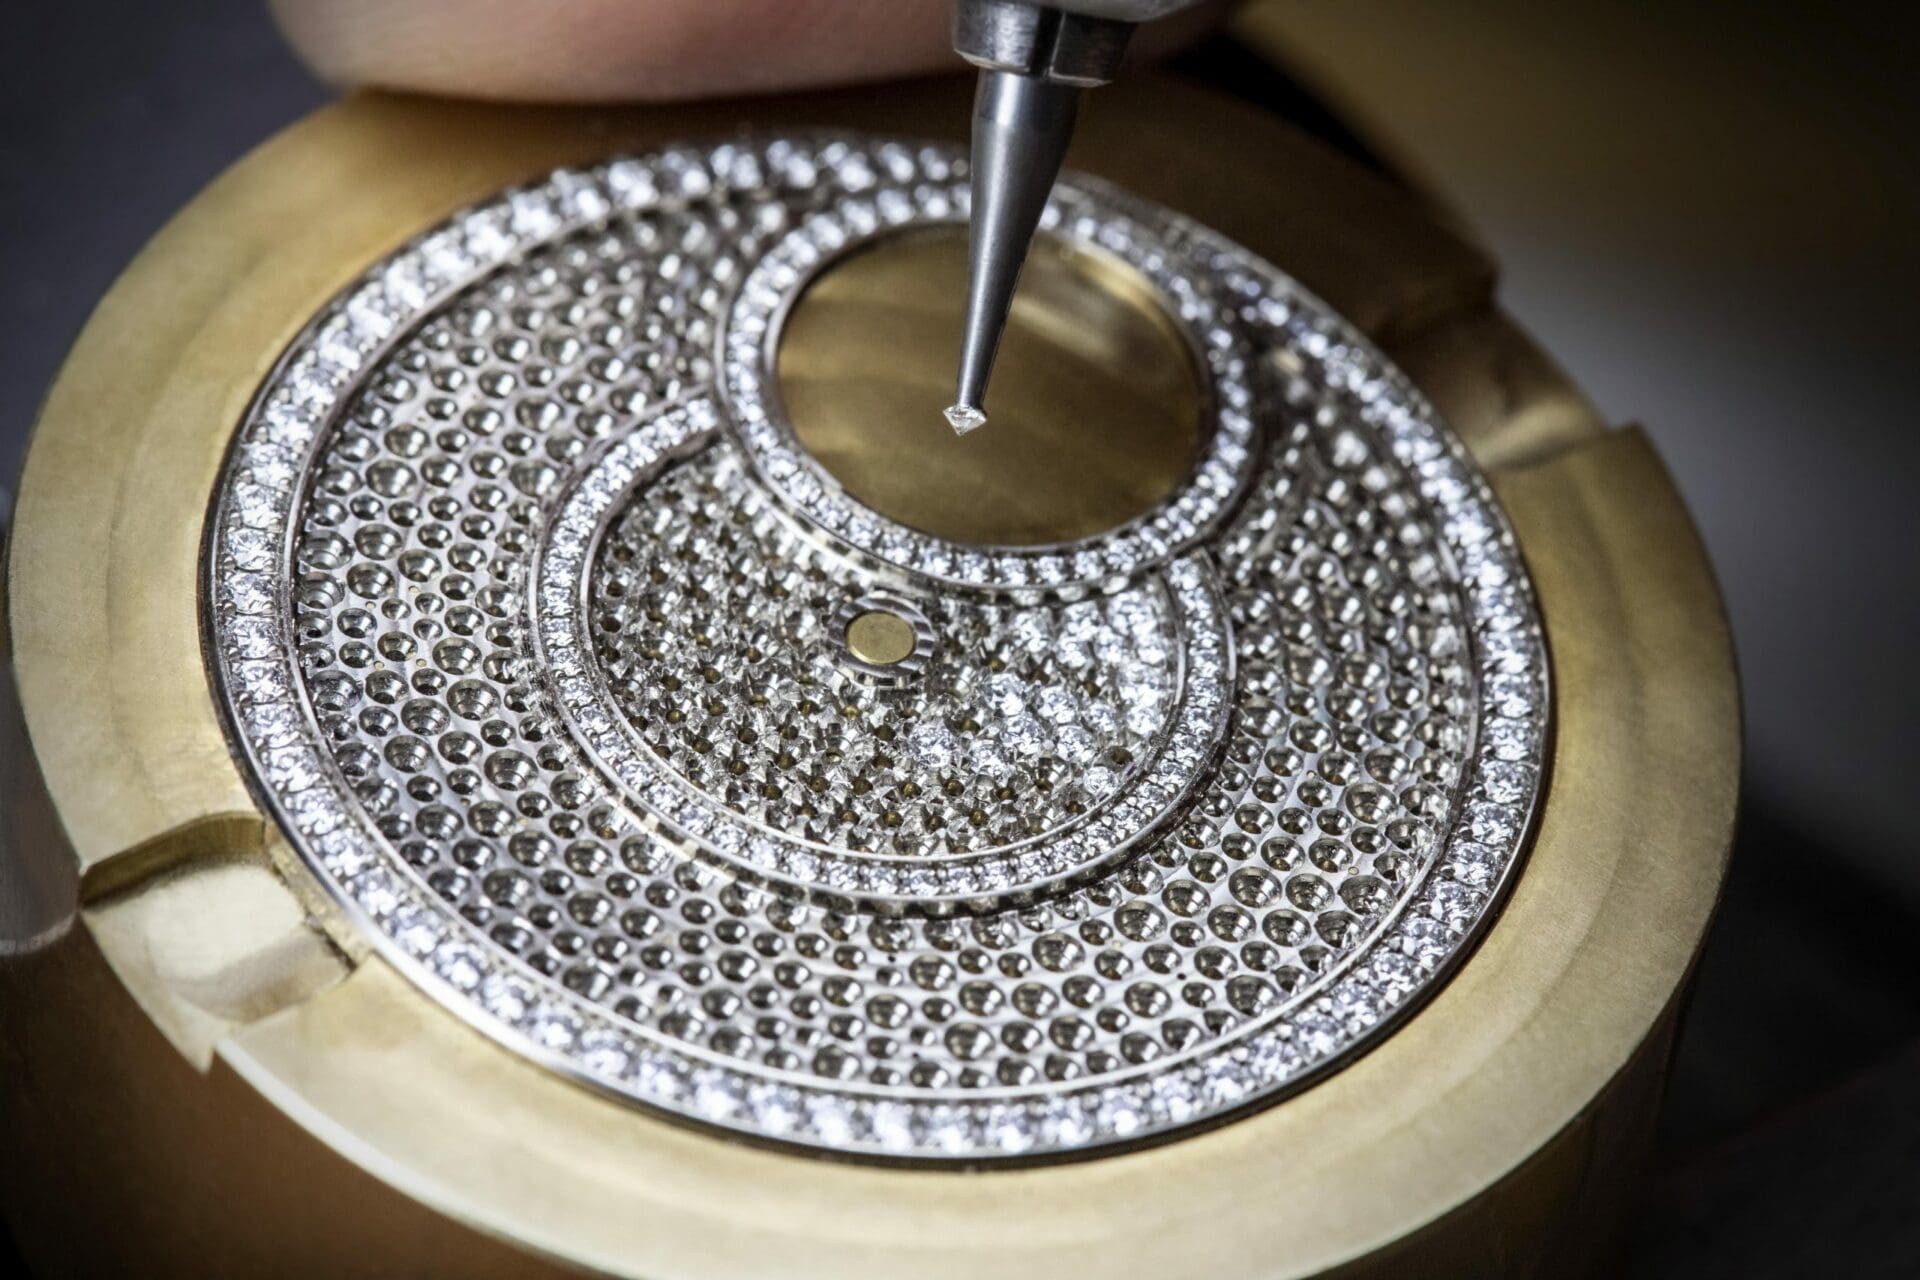 Vacheron Constantin delivers the dazzle of diamonds in the Égérie collection